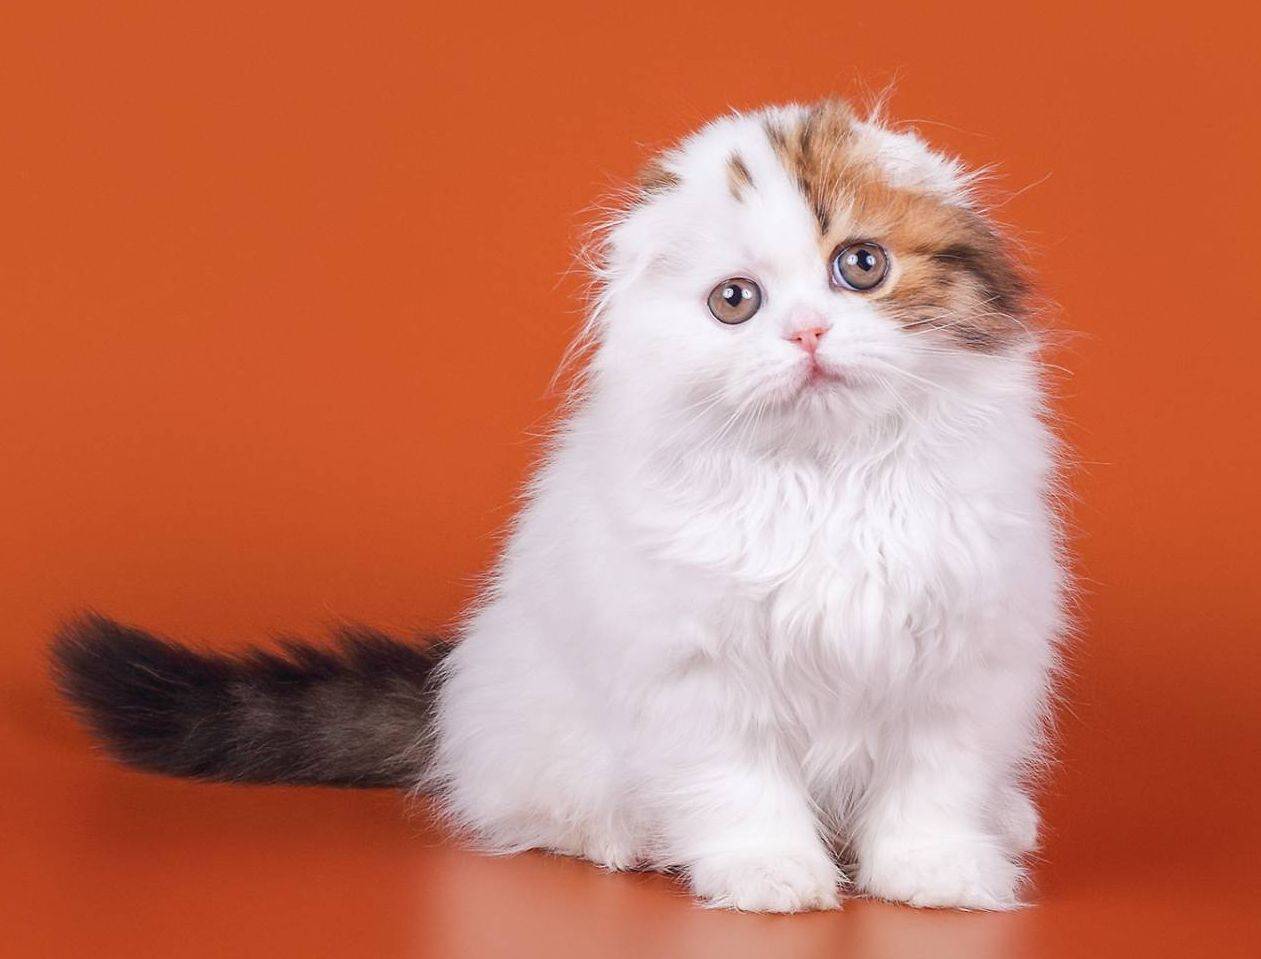 Вислоухая длинношерстная шотландская кошка описание породы и характера